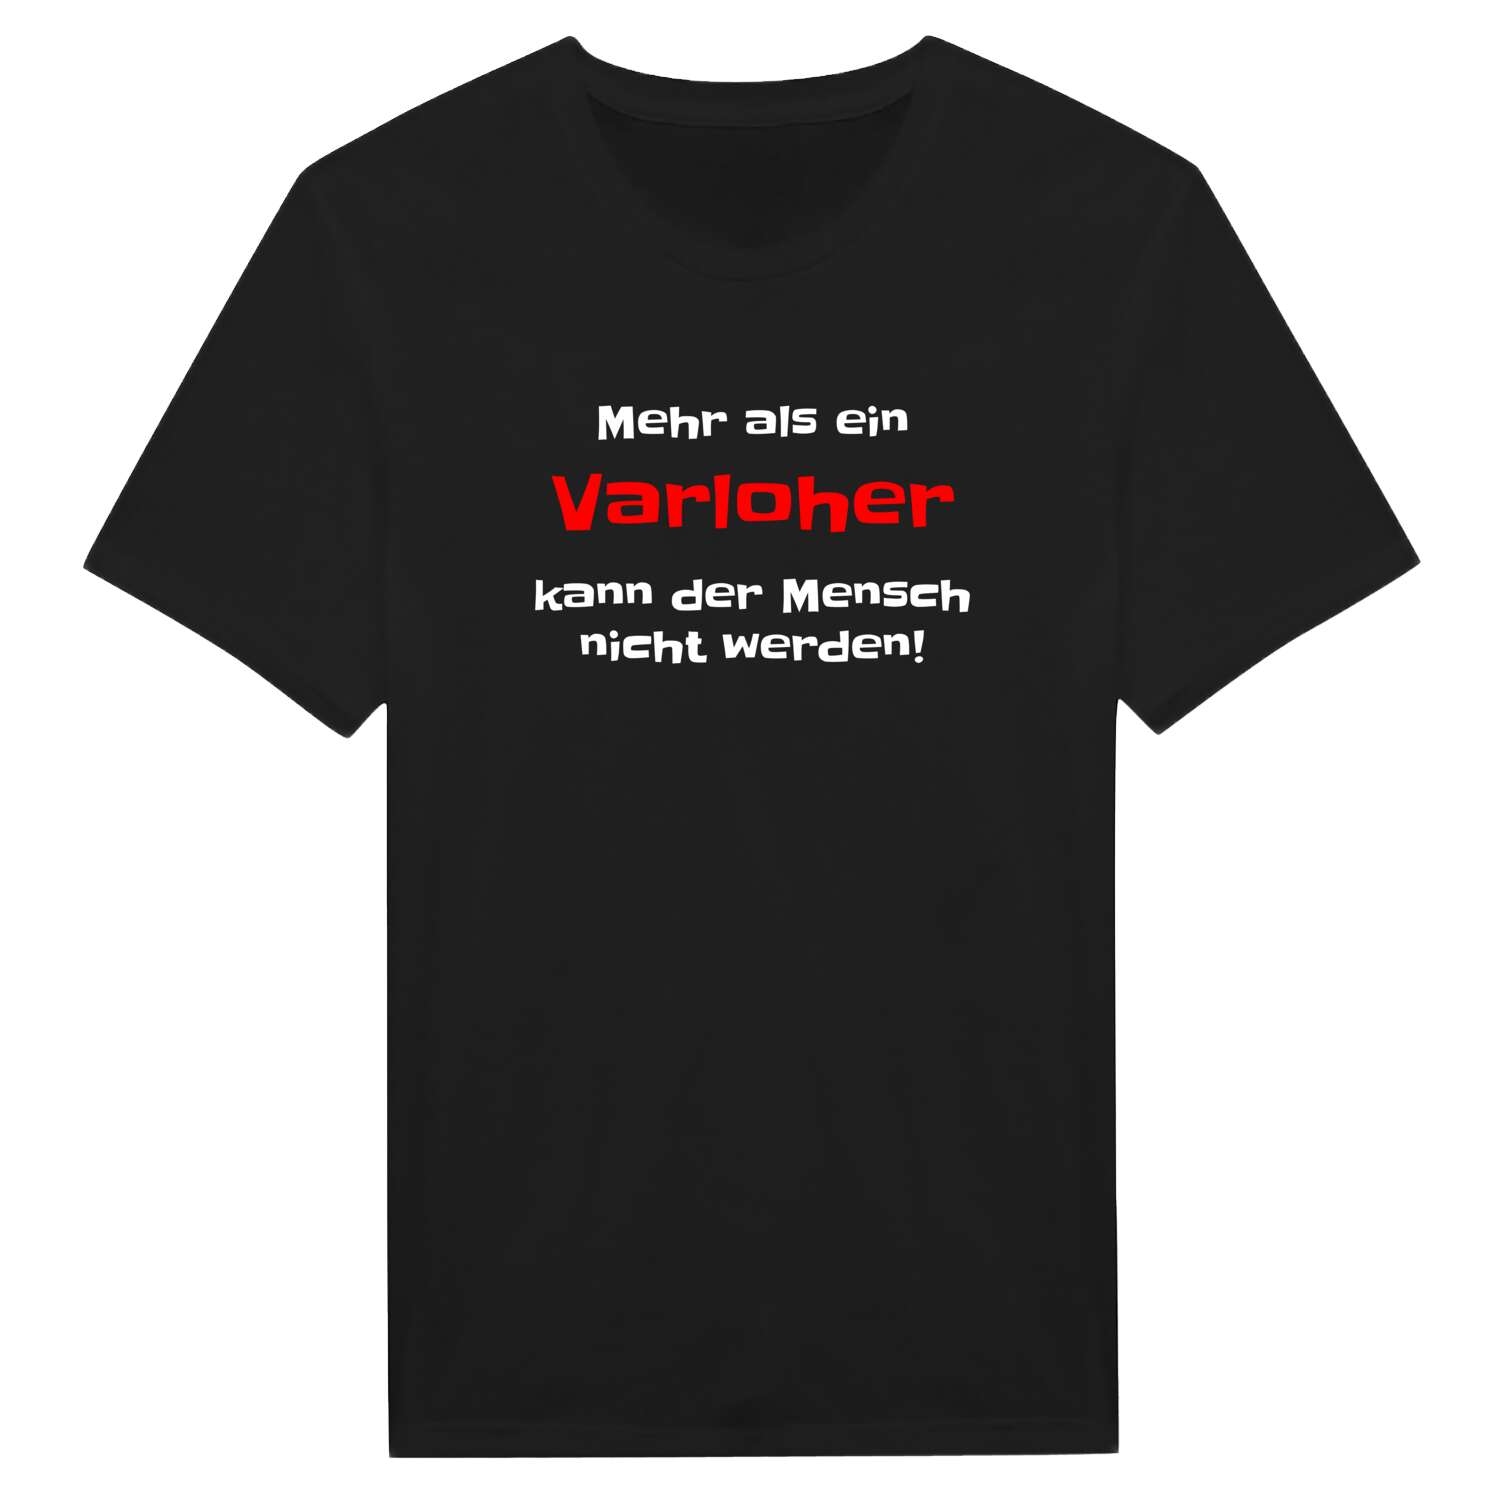 Varloh T-Shirt »Mehr als ein«